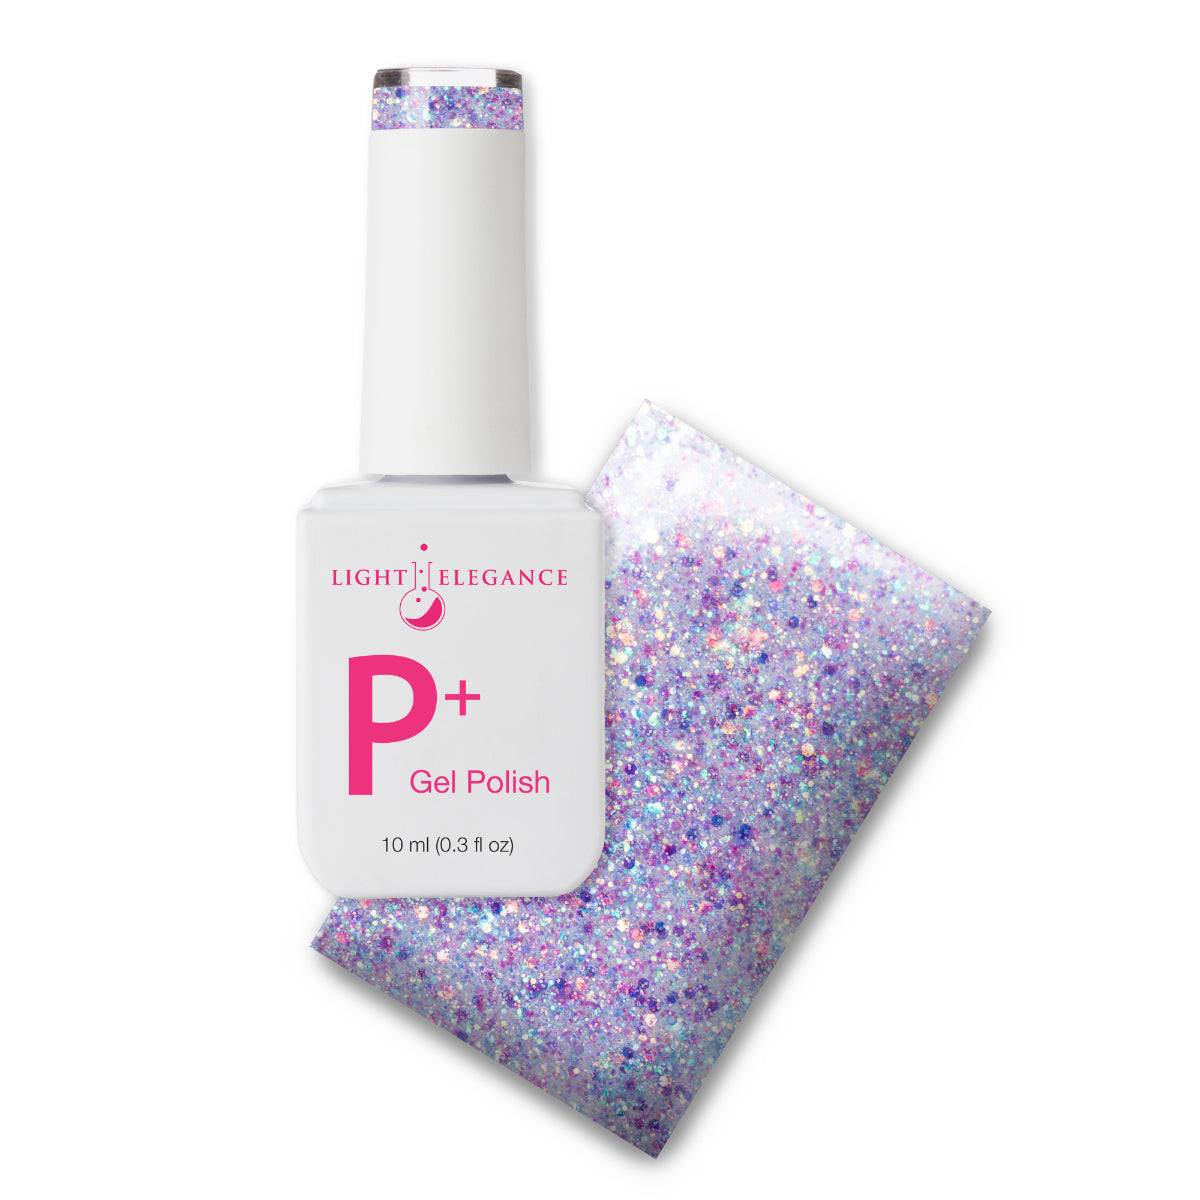 Light Elegance P+ Soak Off Glitter Gel - In My Happy Place :: New Packaging